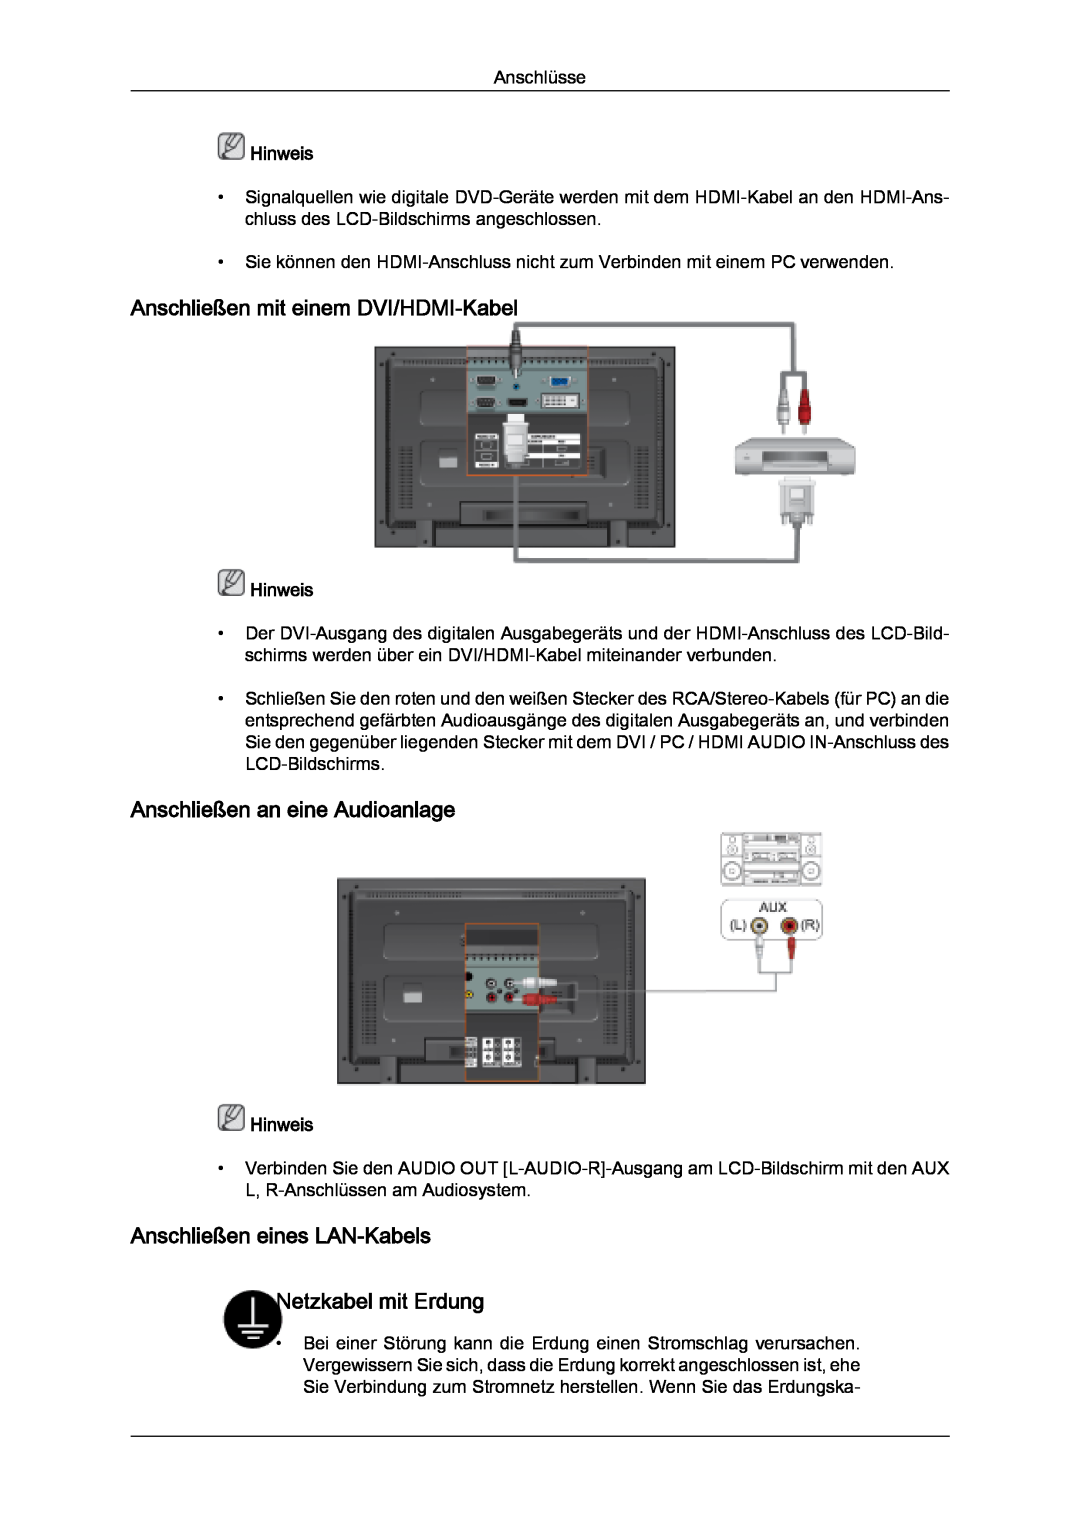 Samsung LH32MGQPBC/EN, LH32MGULBC/EN manual Anschließen mit einem DVI/HDMI-Kabel, Anschließen an eine Audioanlage, Hinweis 